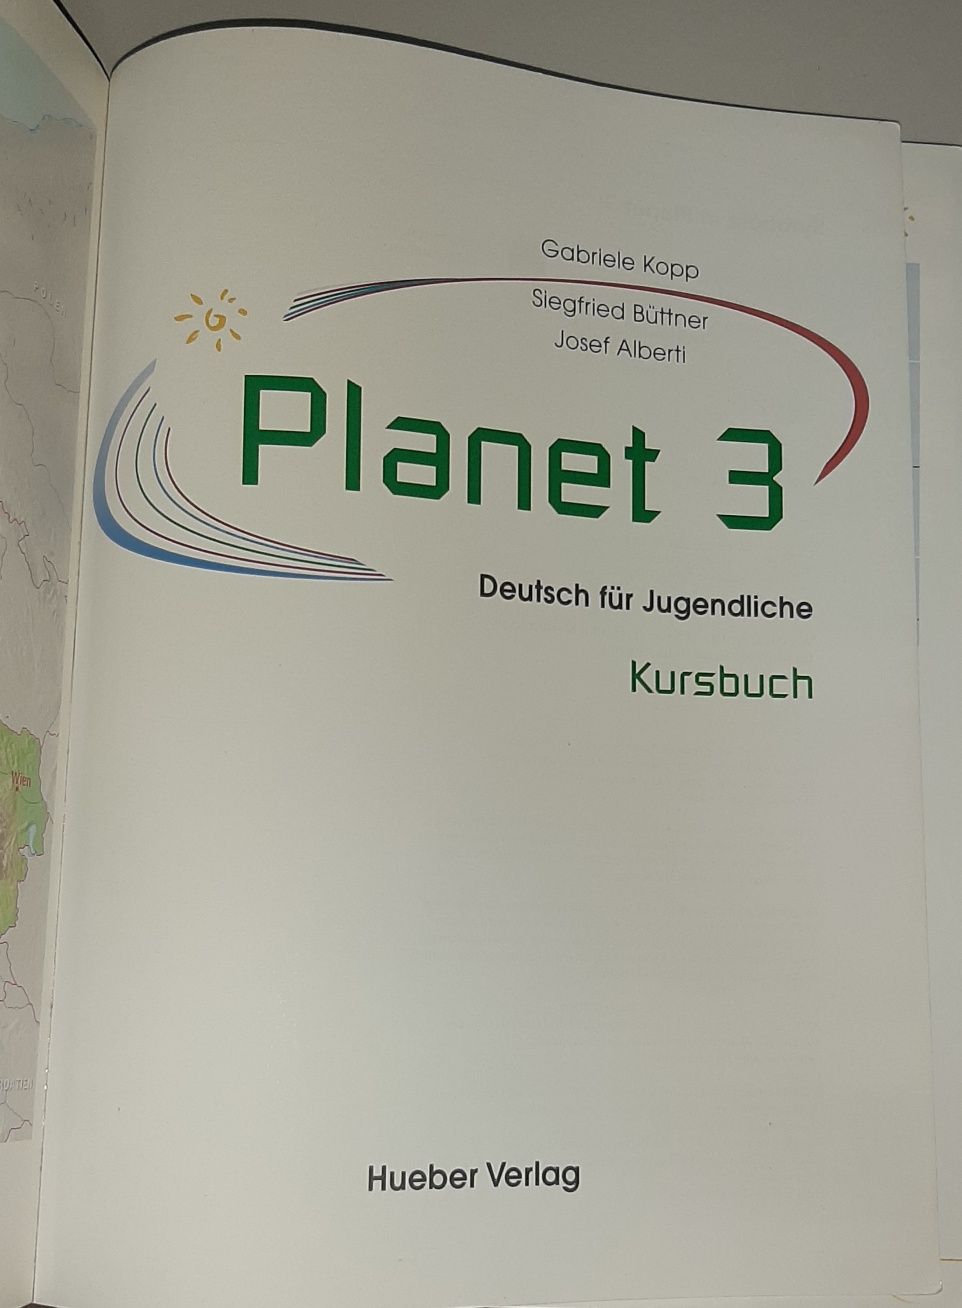 Підручник з німецької мови Planet 3